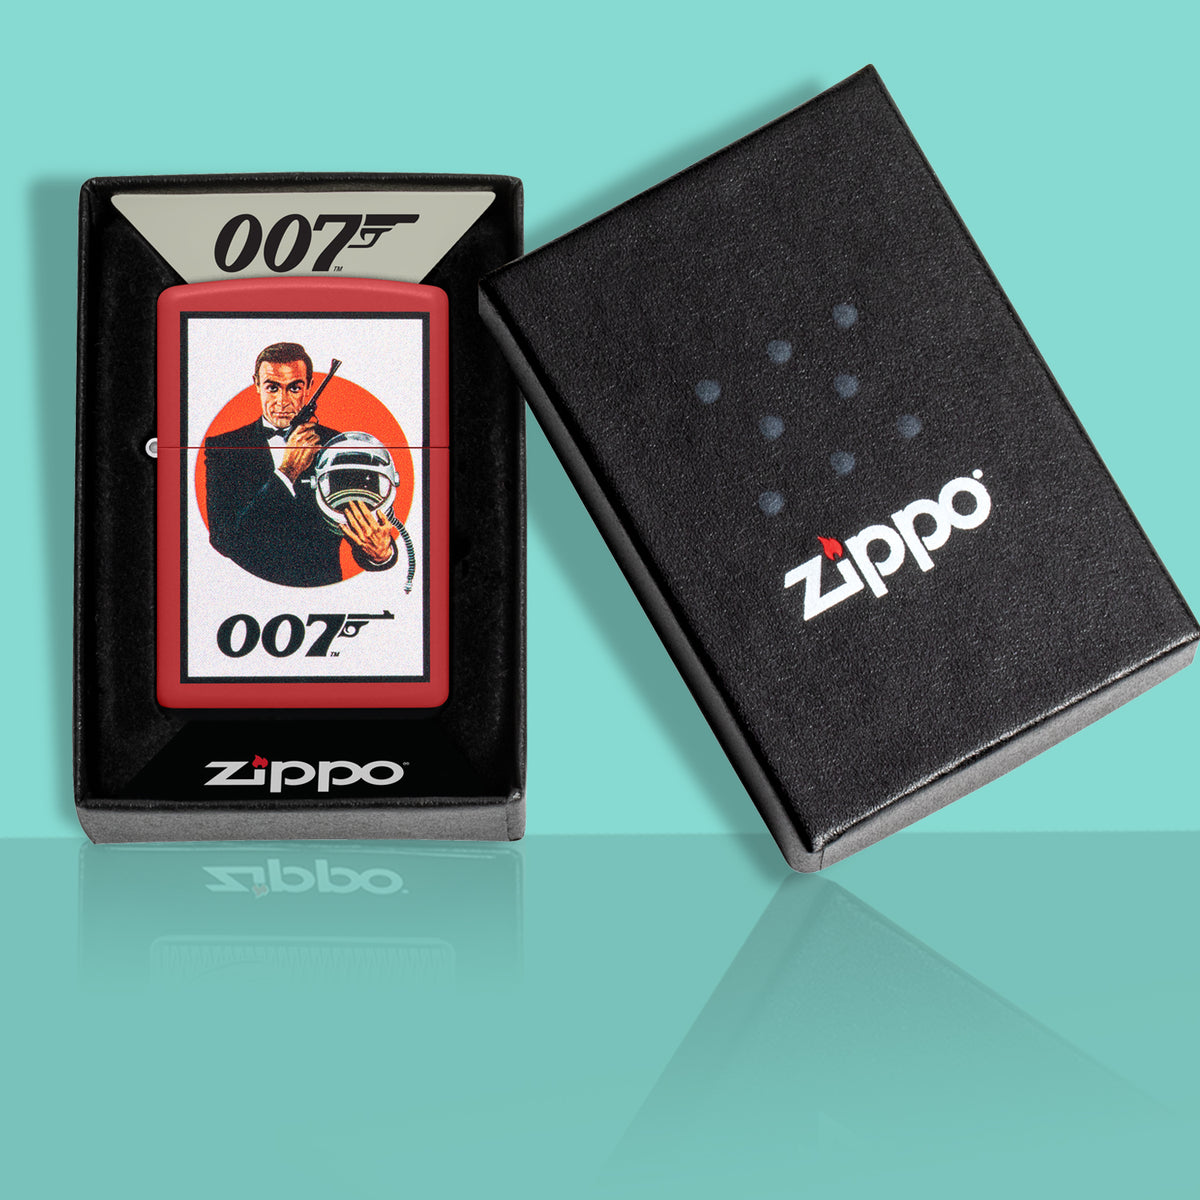 James Bond Zippo Feuerzeug - Man lebt nur zweimal, rote Edition